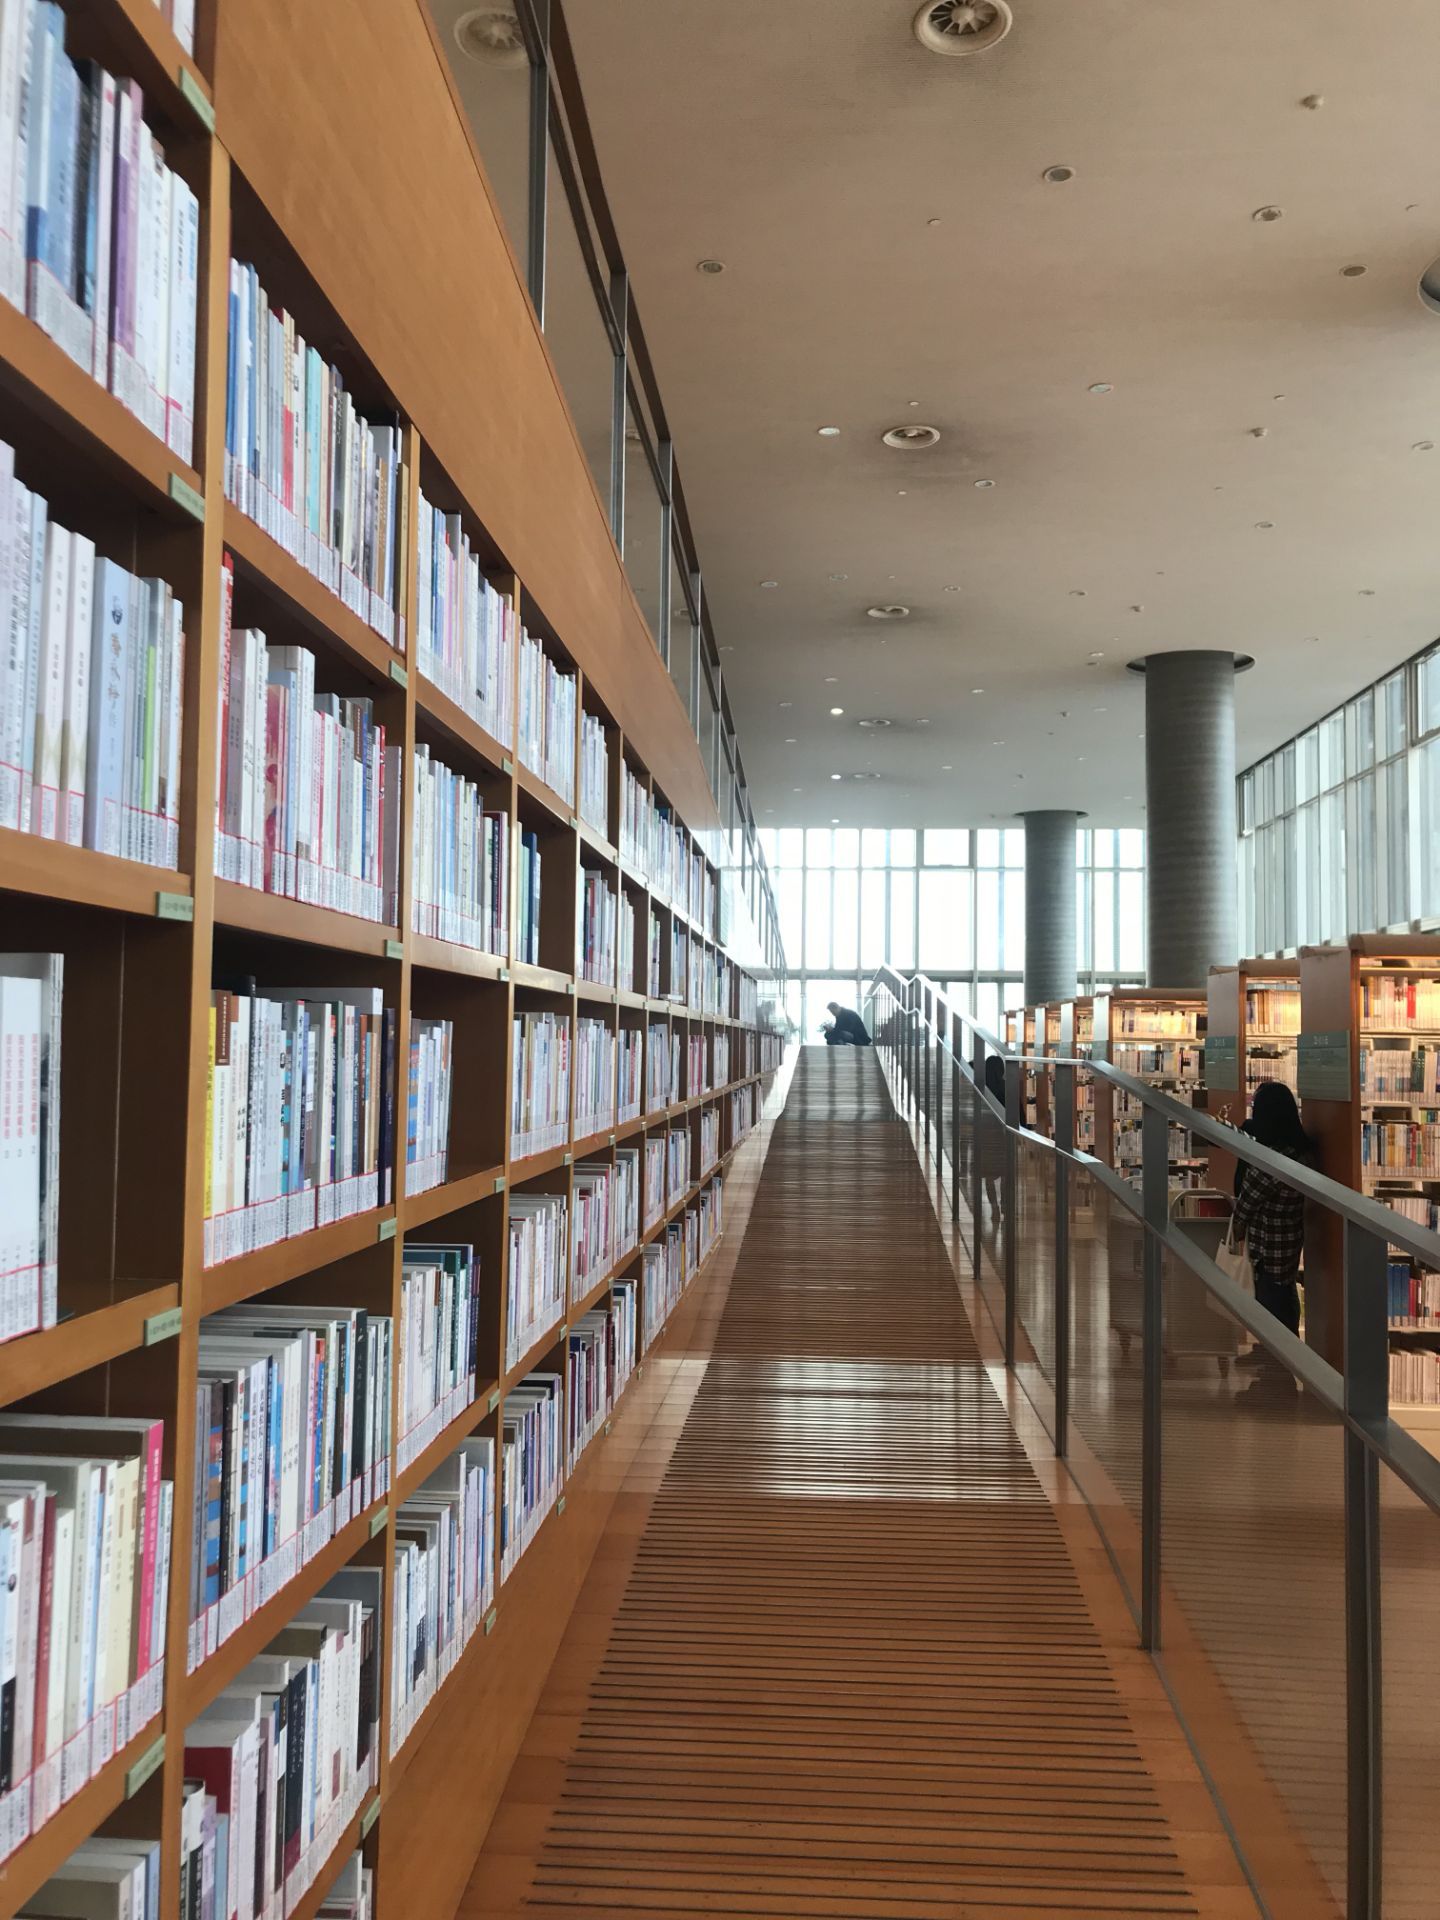 浦东图书馆,堪称上海市图书馆里的颜值担当,那里是一座难求的